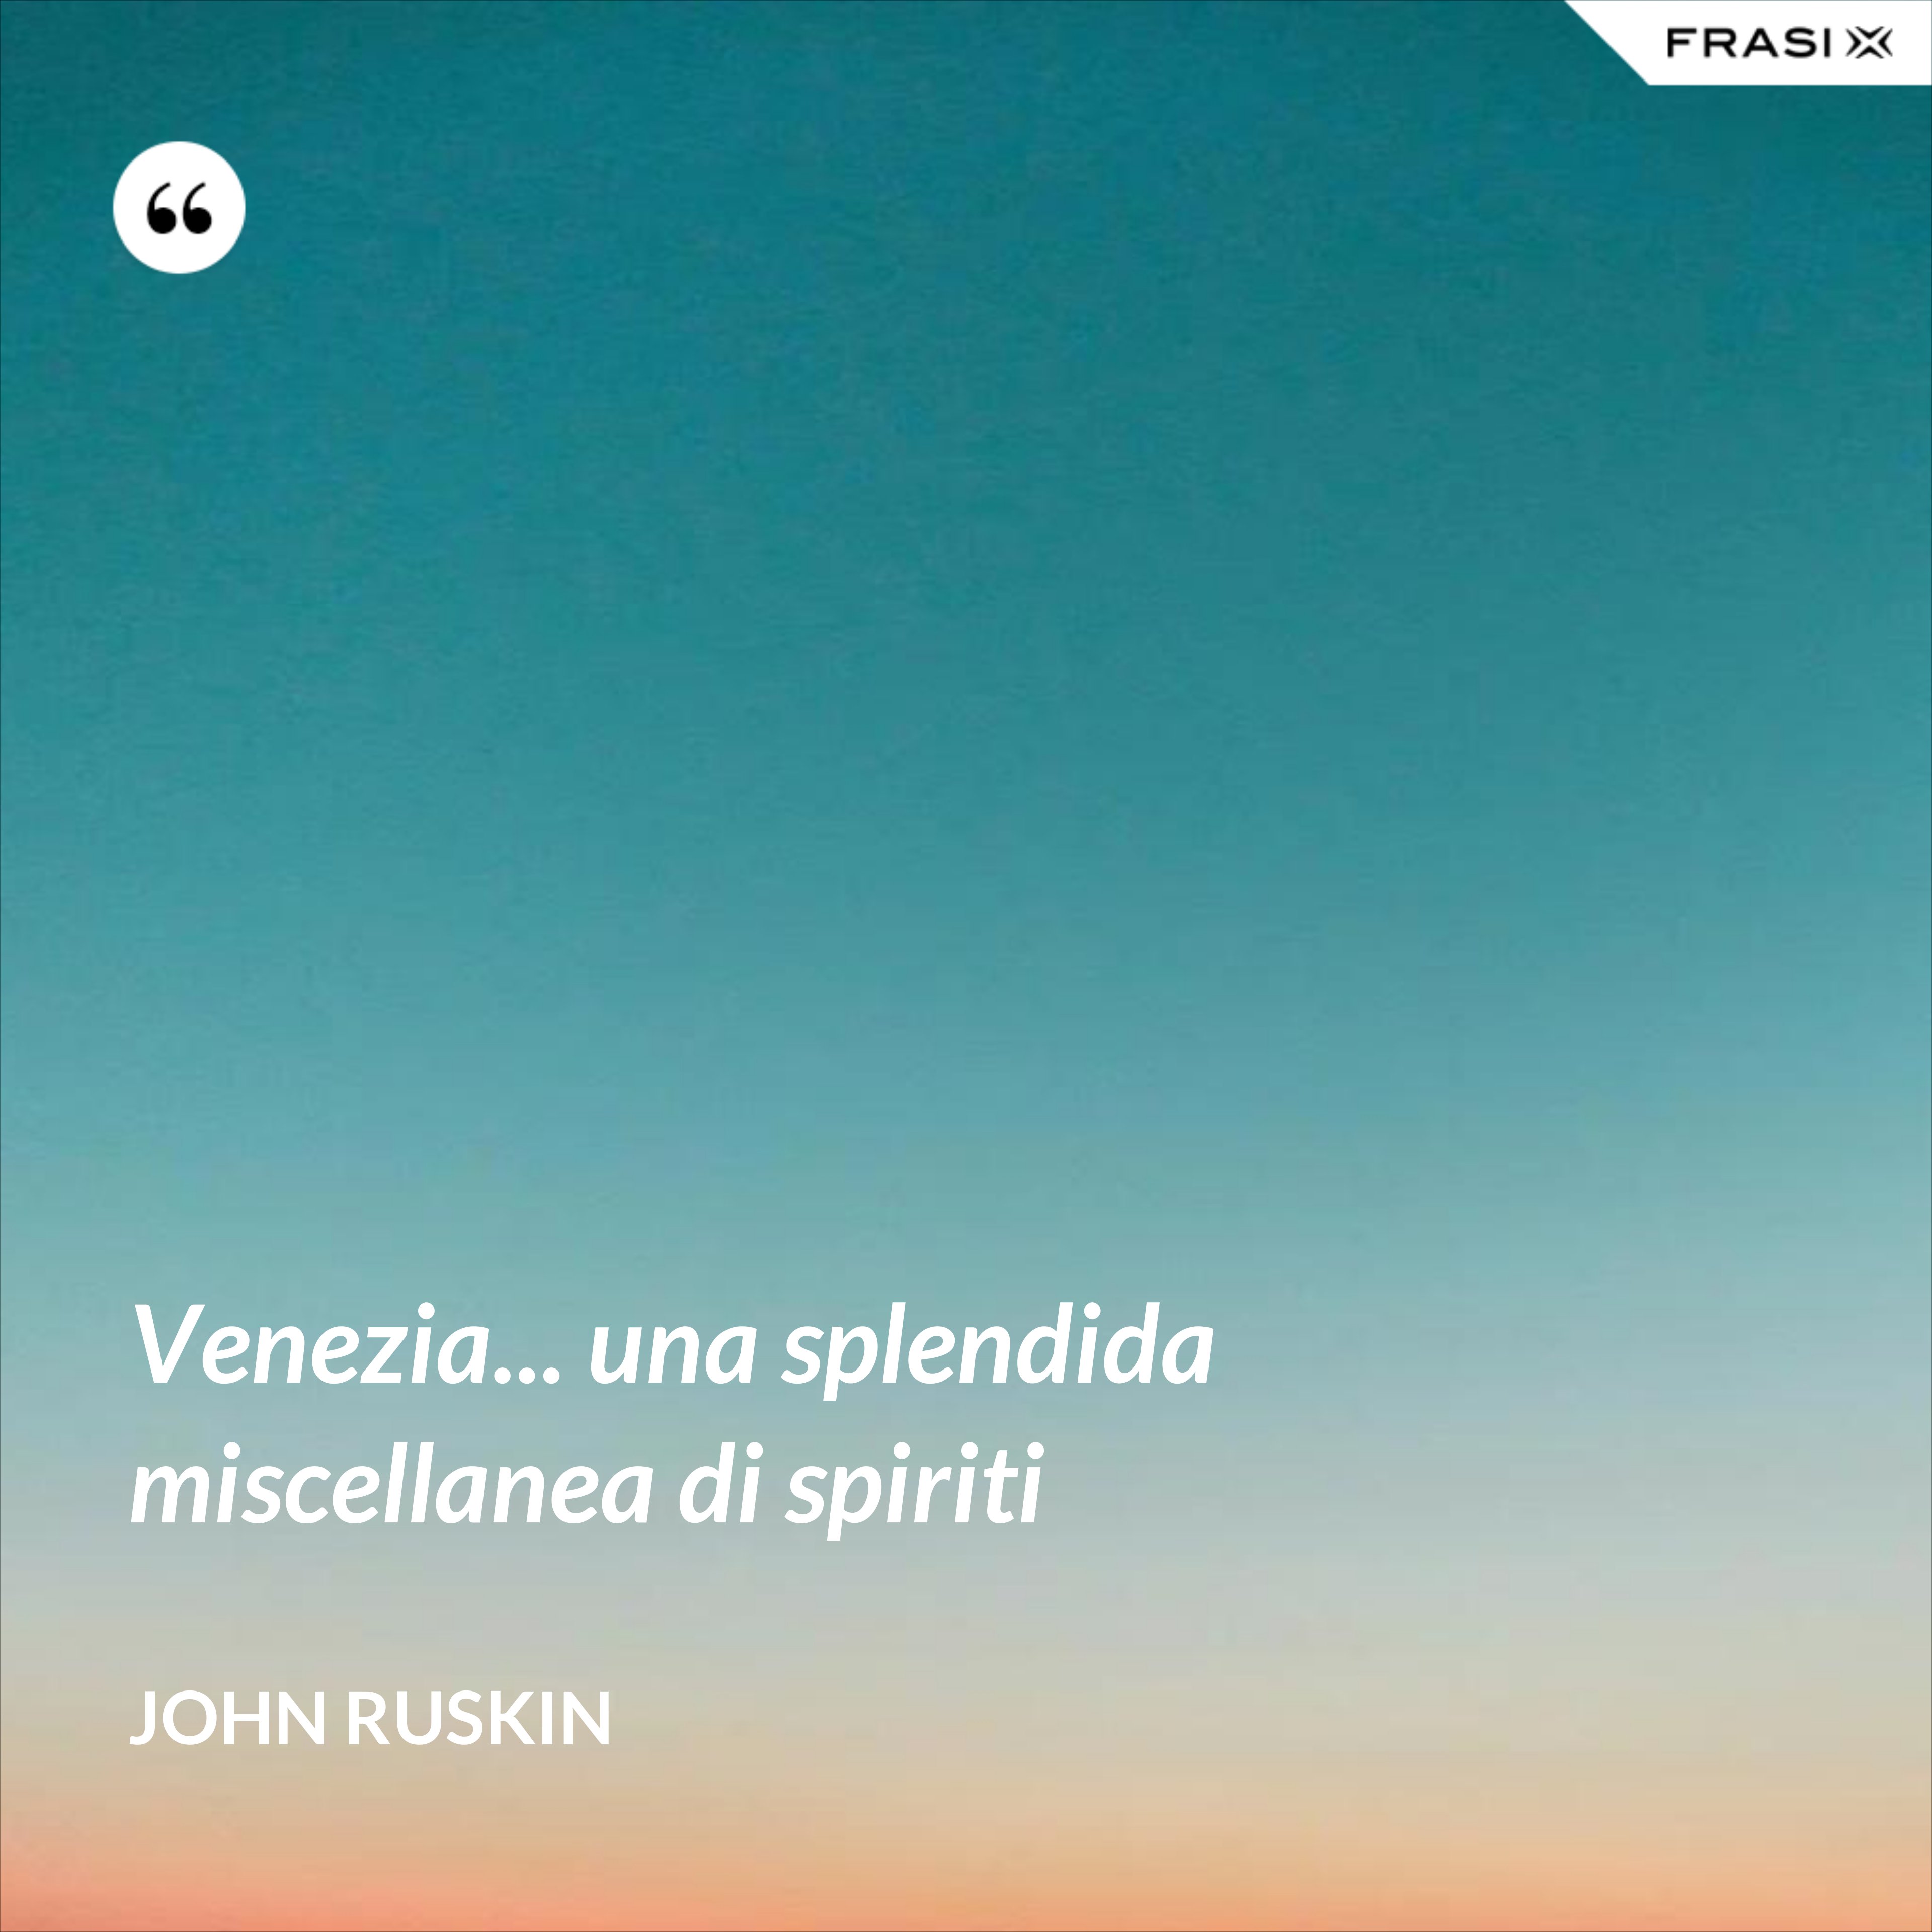 Venezia... una splendida miscellanea di spiriti - John Ruskin